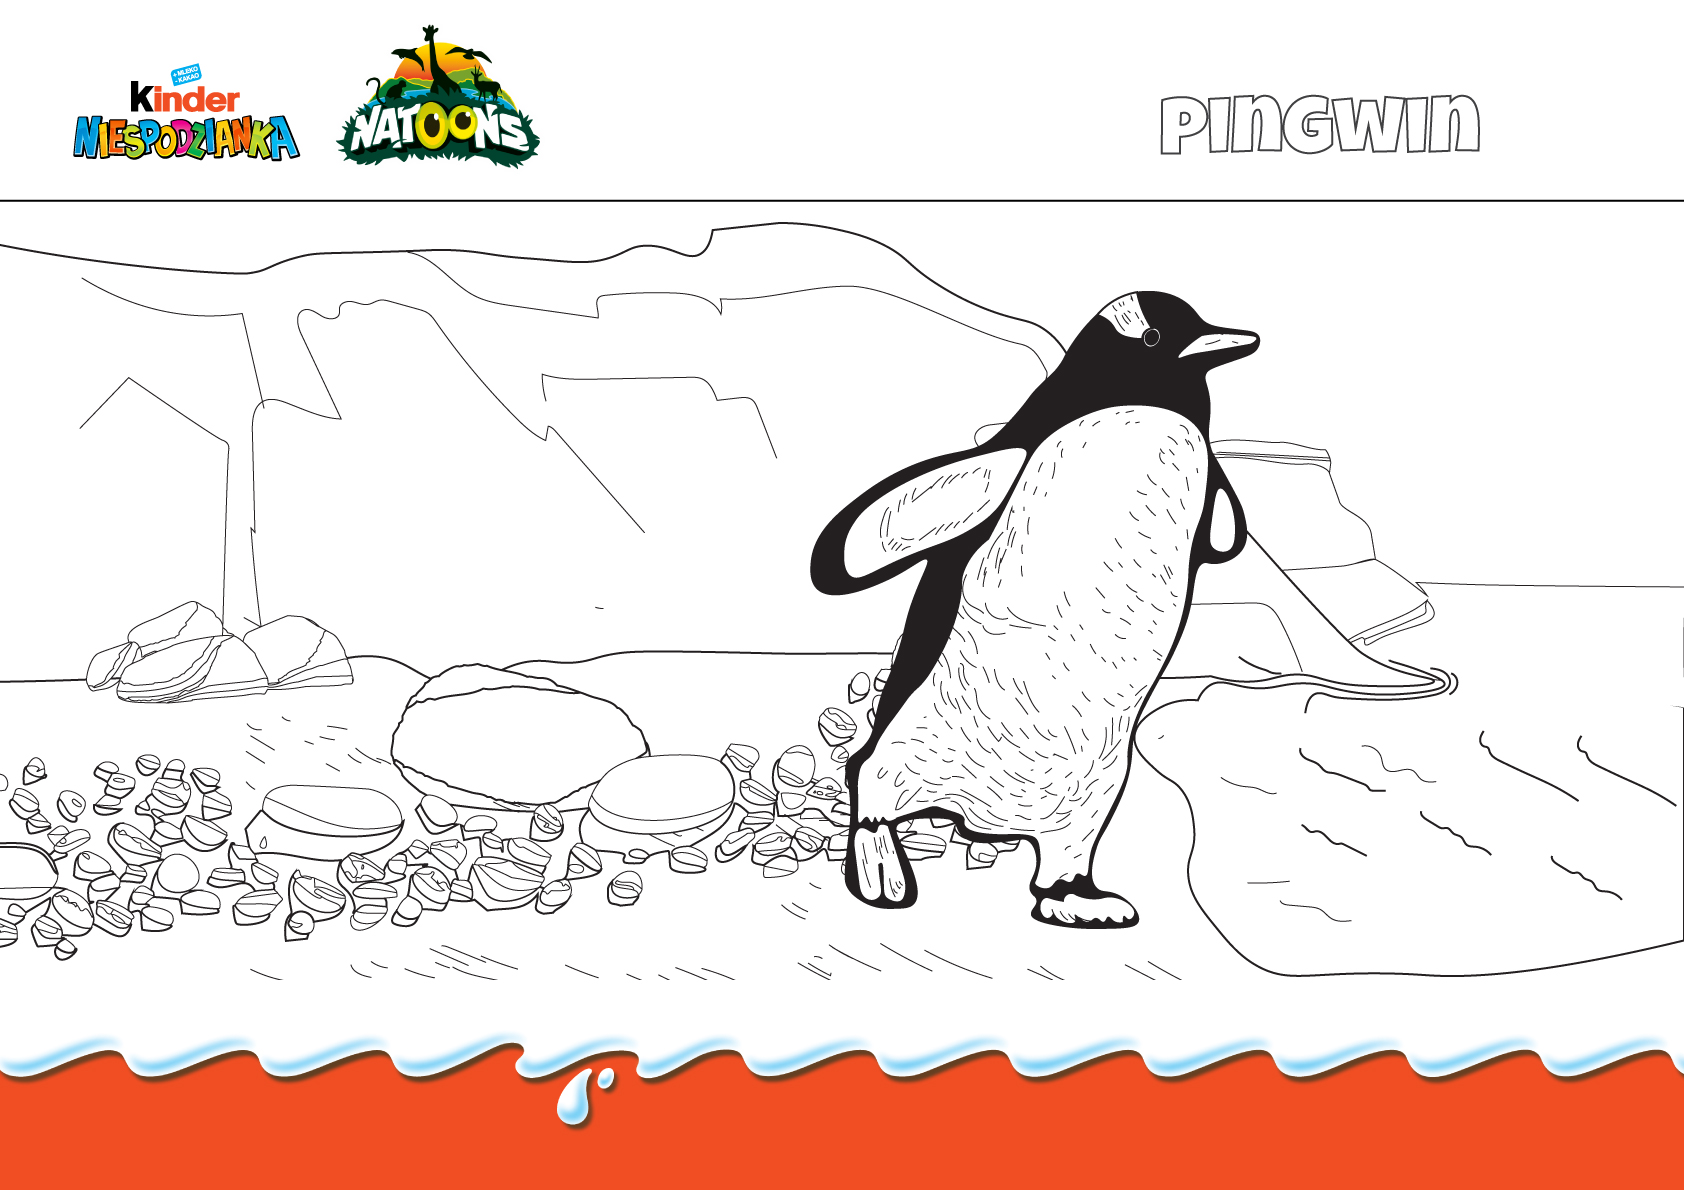 Kliknij i pobierz kolorowankę pingwina